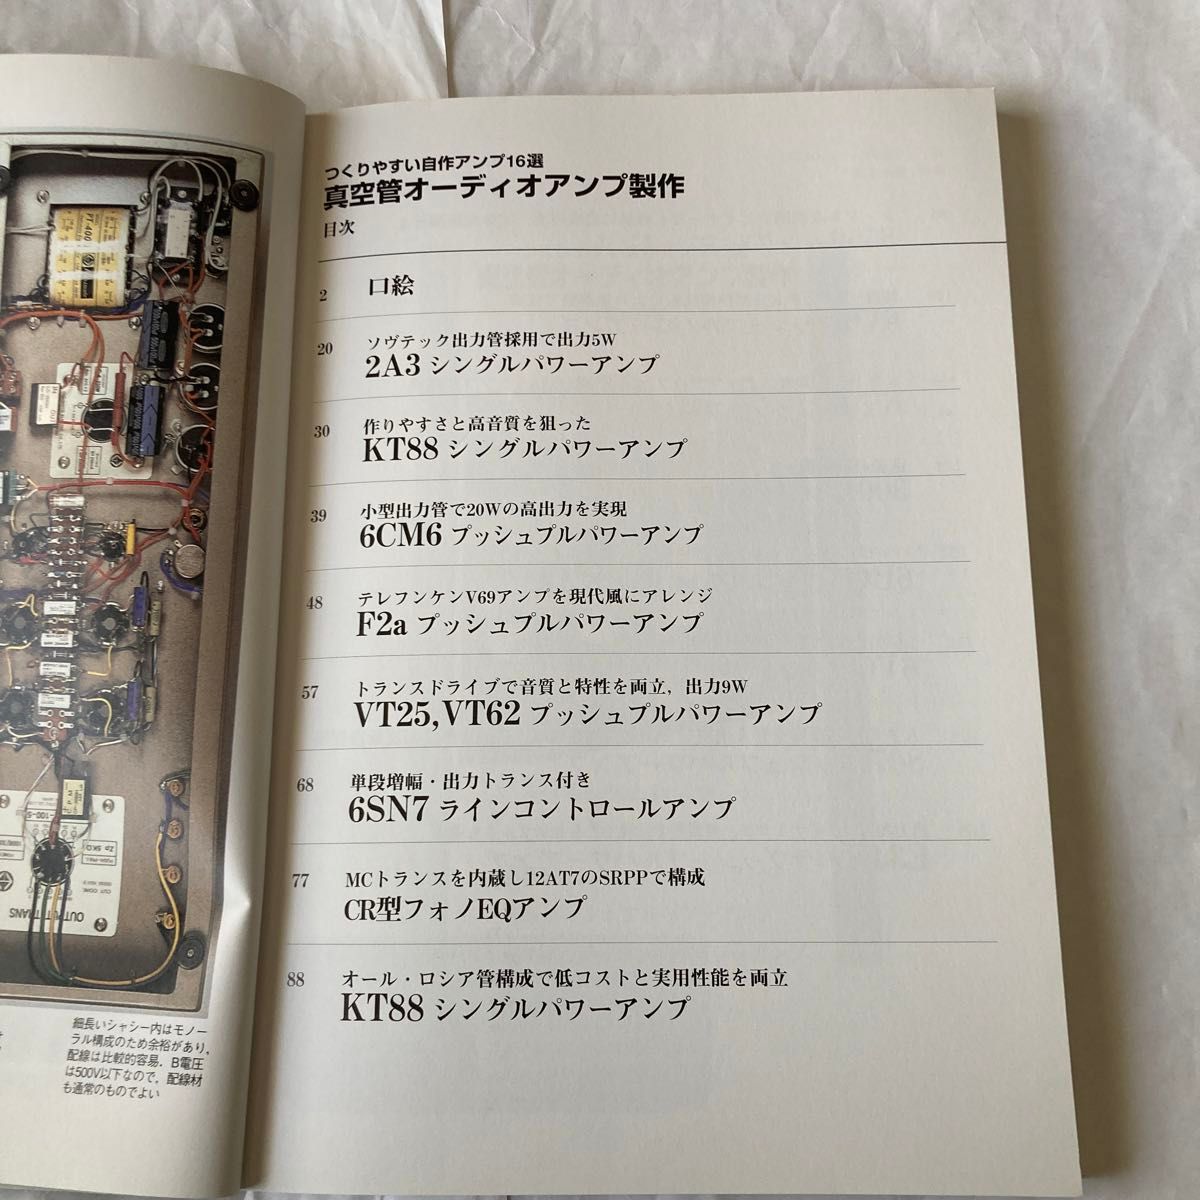 真空管オーディオアンプ製作　2008年10月発行  岩村氏他3氏製作記事　なかなか参考になる書籍です。